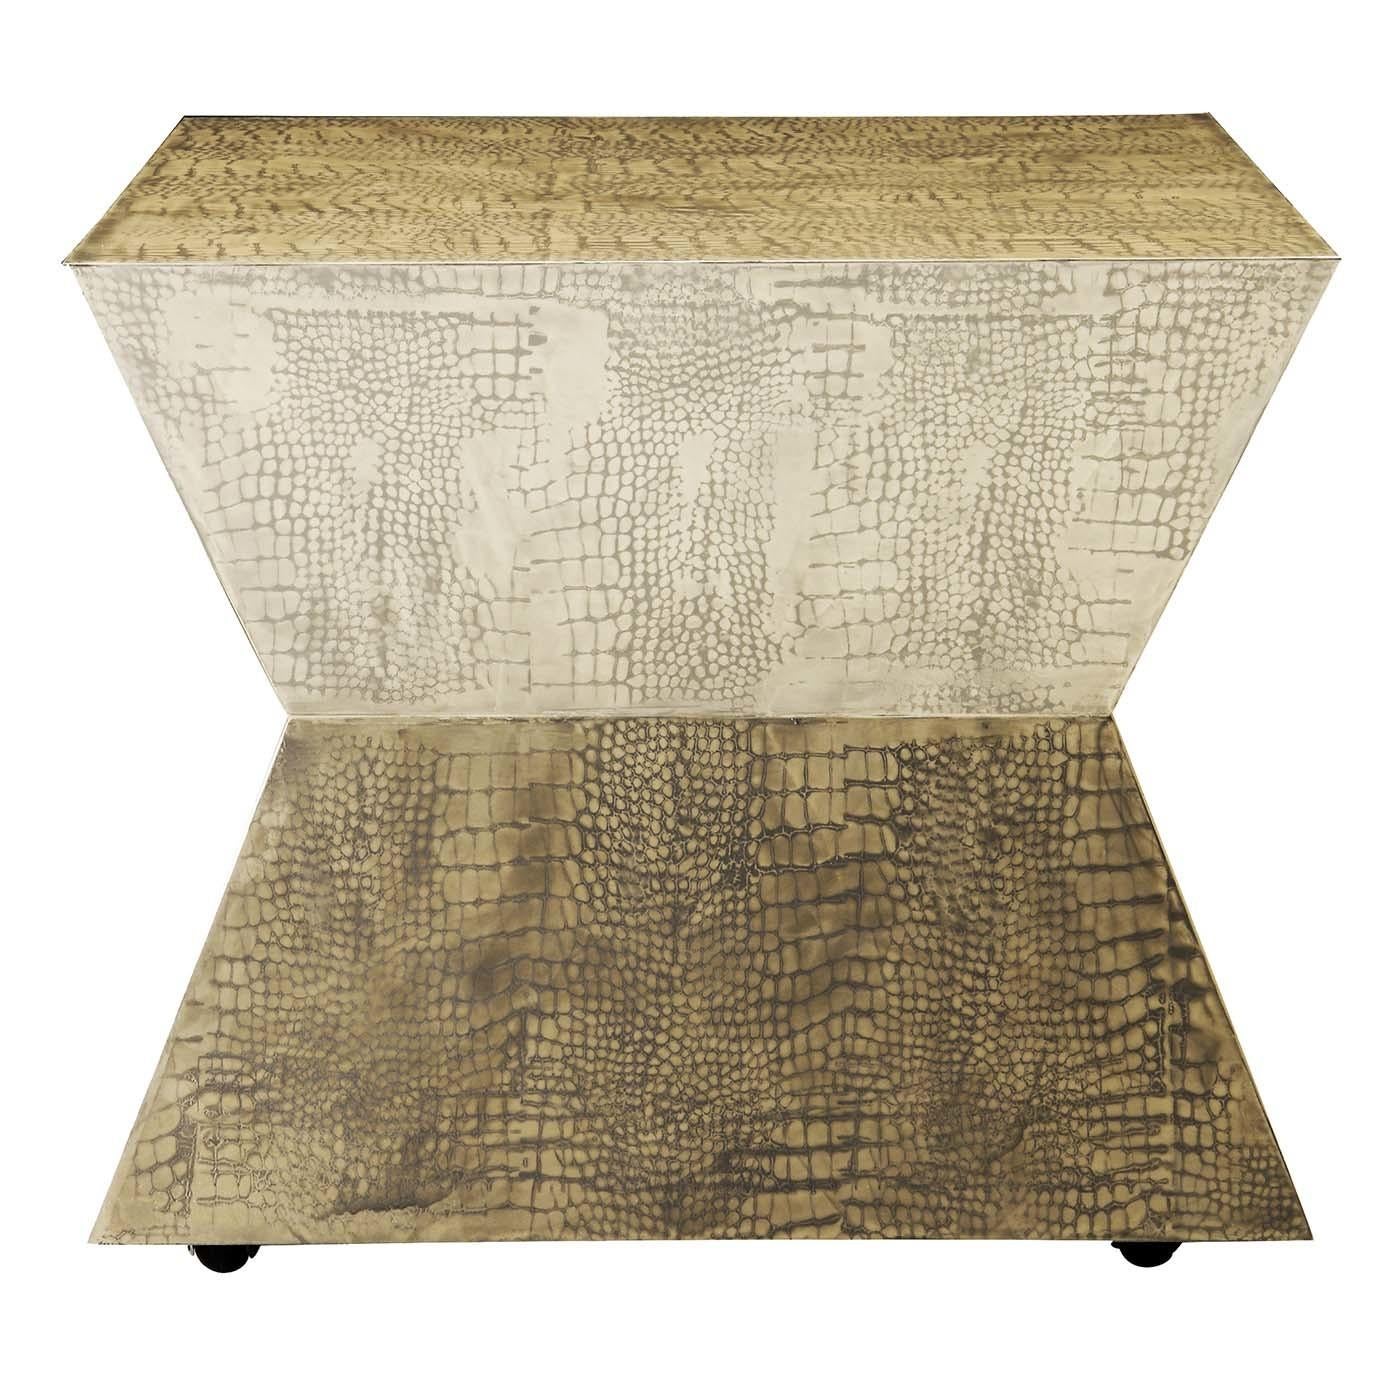 Als Teil der Pop & Op Tischkollektionen ist dieses elegante sanduhrförmige Stück eine beeindruckende und vielseitige Ergänzung für eine moderne oder zeitgenössische Einrichtung. Die symmetrische Silhouette dieses Beistelltisches ruht auf vier